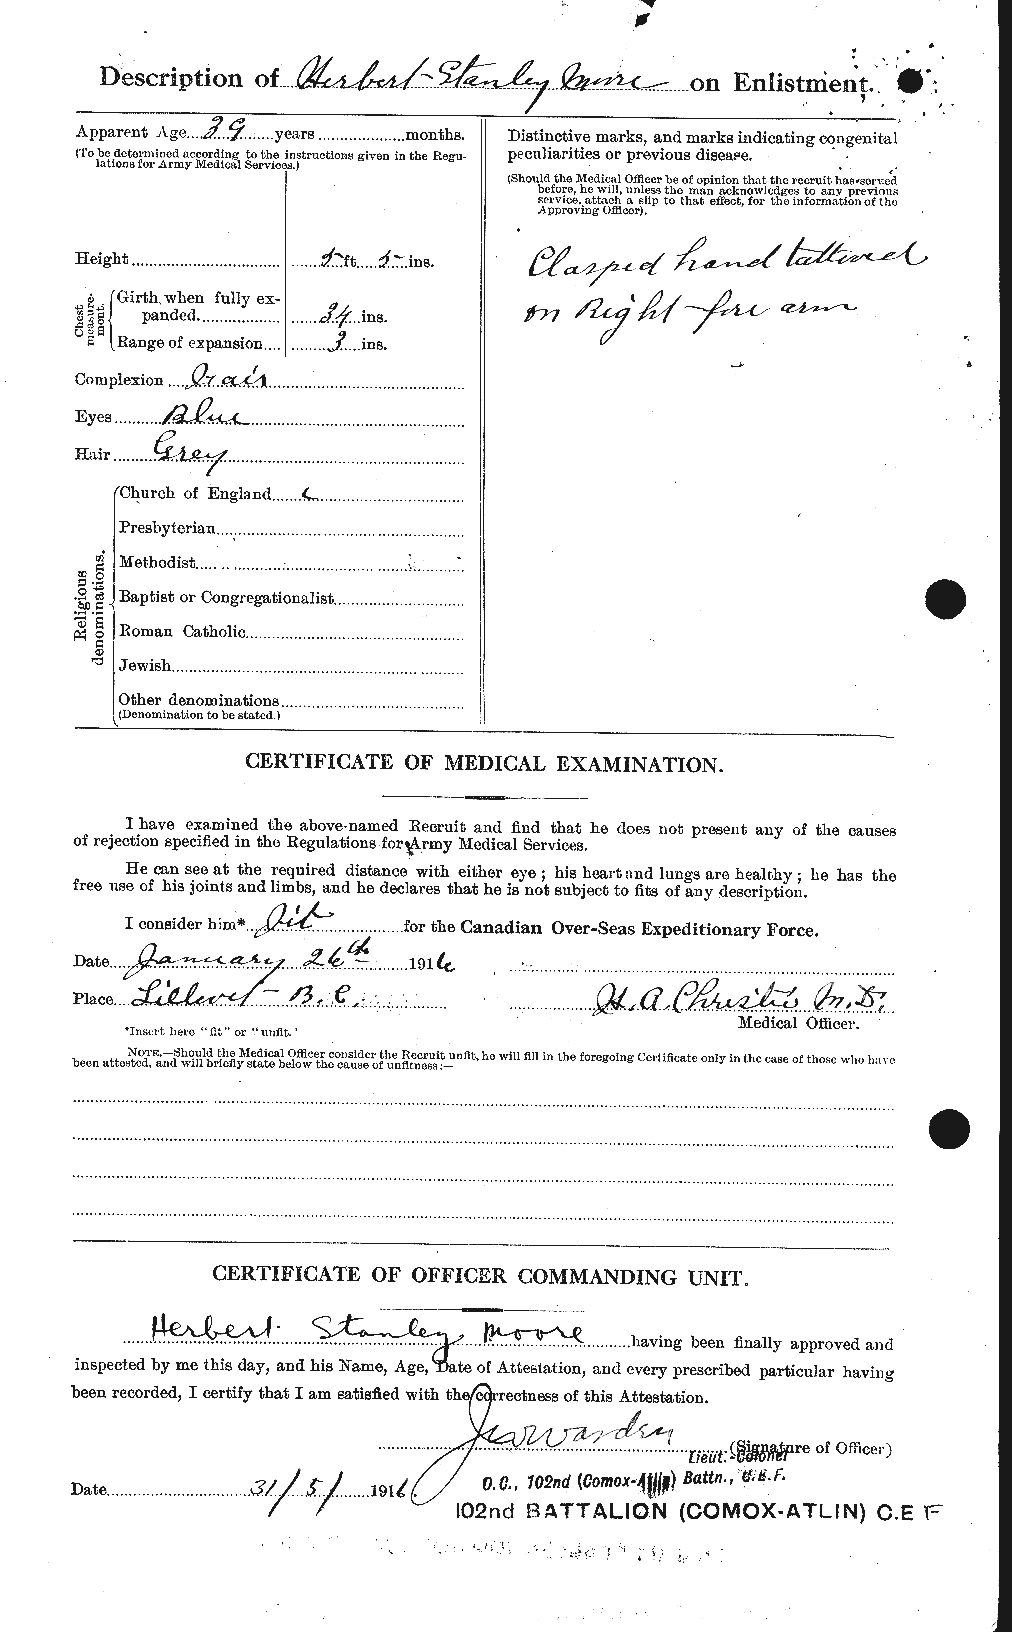 Dossiers du Personnel de la Première Guerre mondiale - CEC 502126b